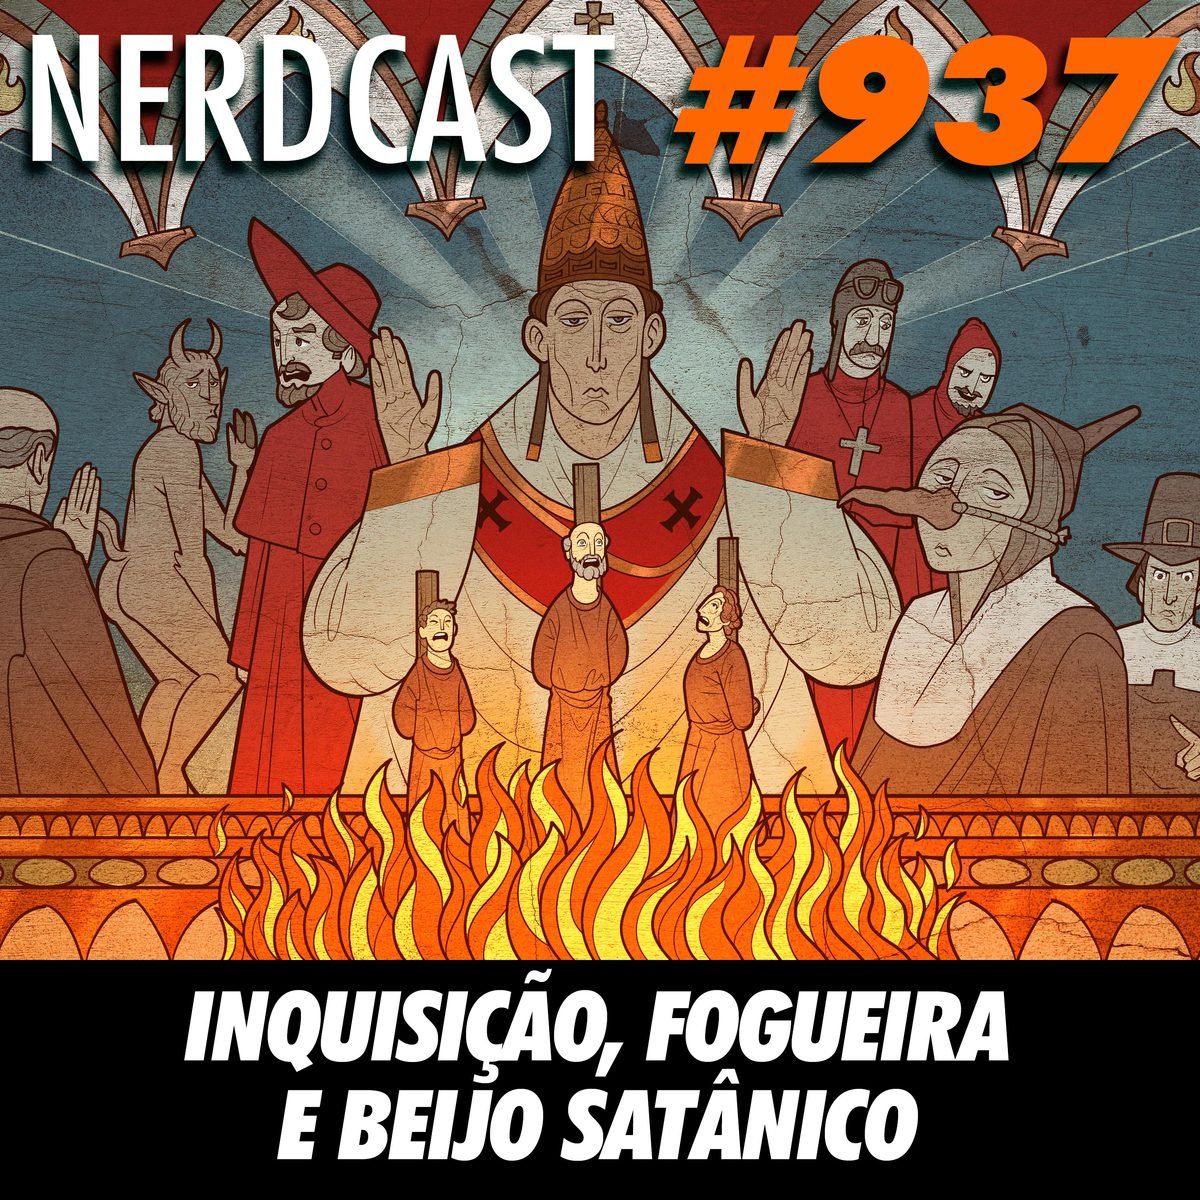 NerdCast 937 - Inquisição, fogueira e beijo satânico